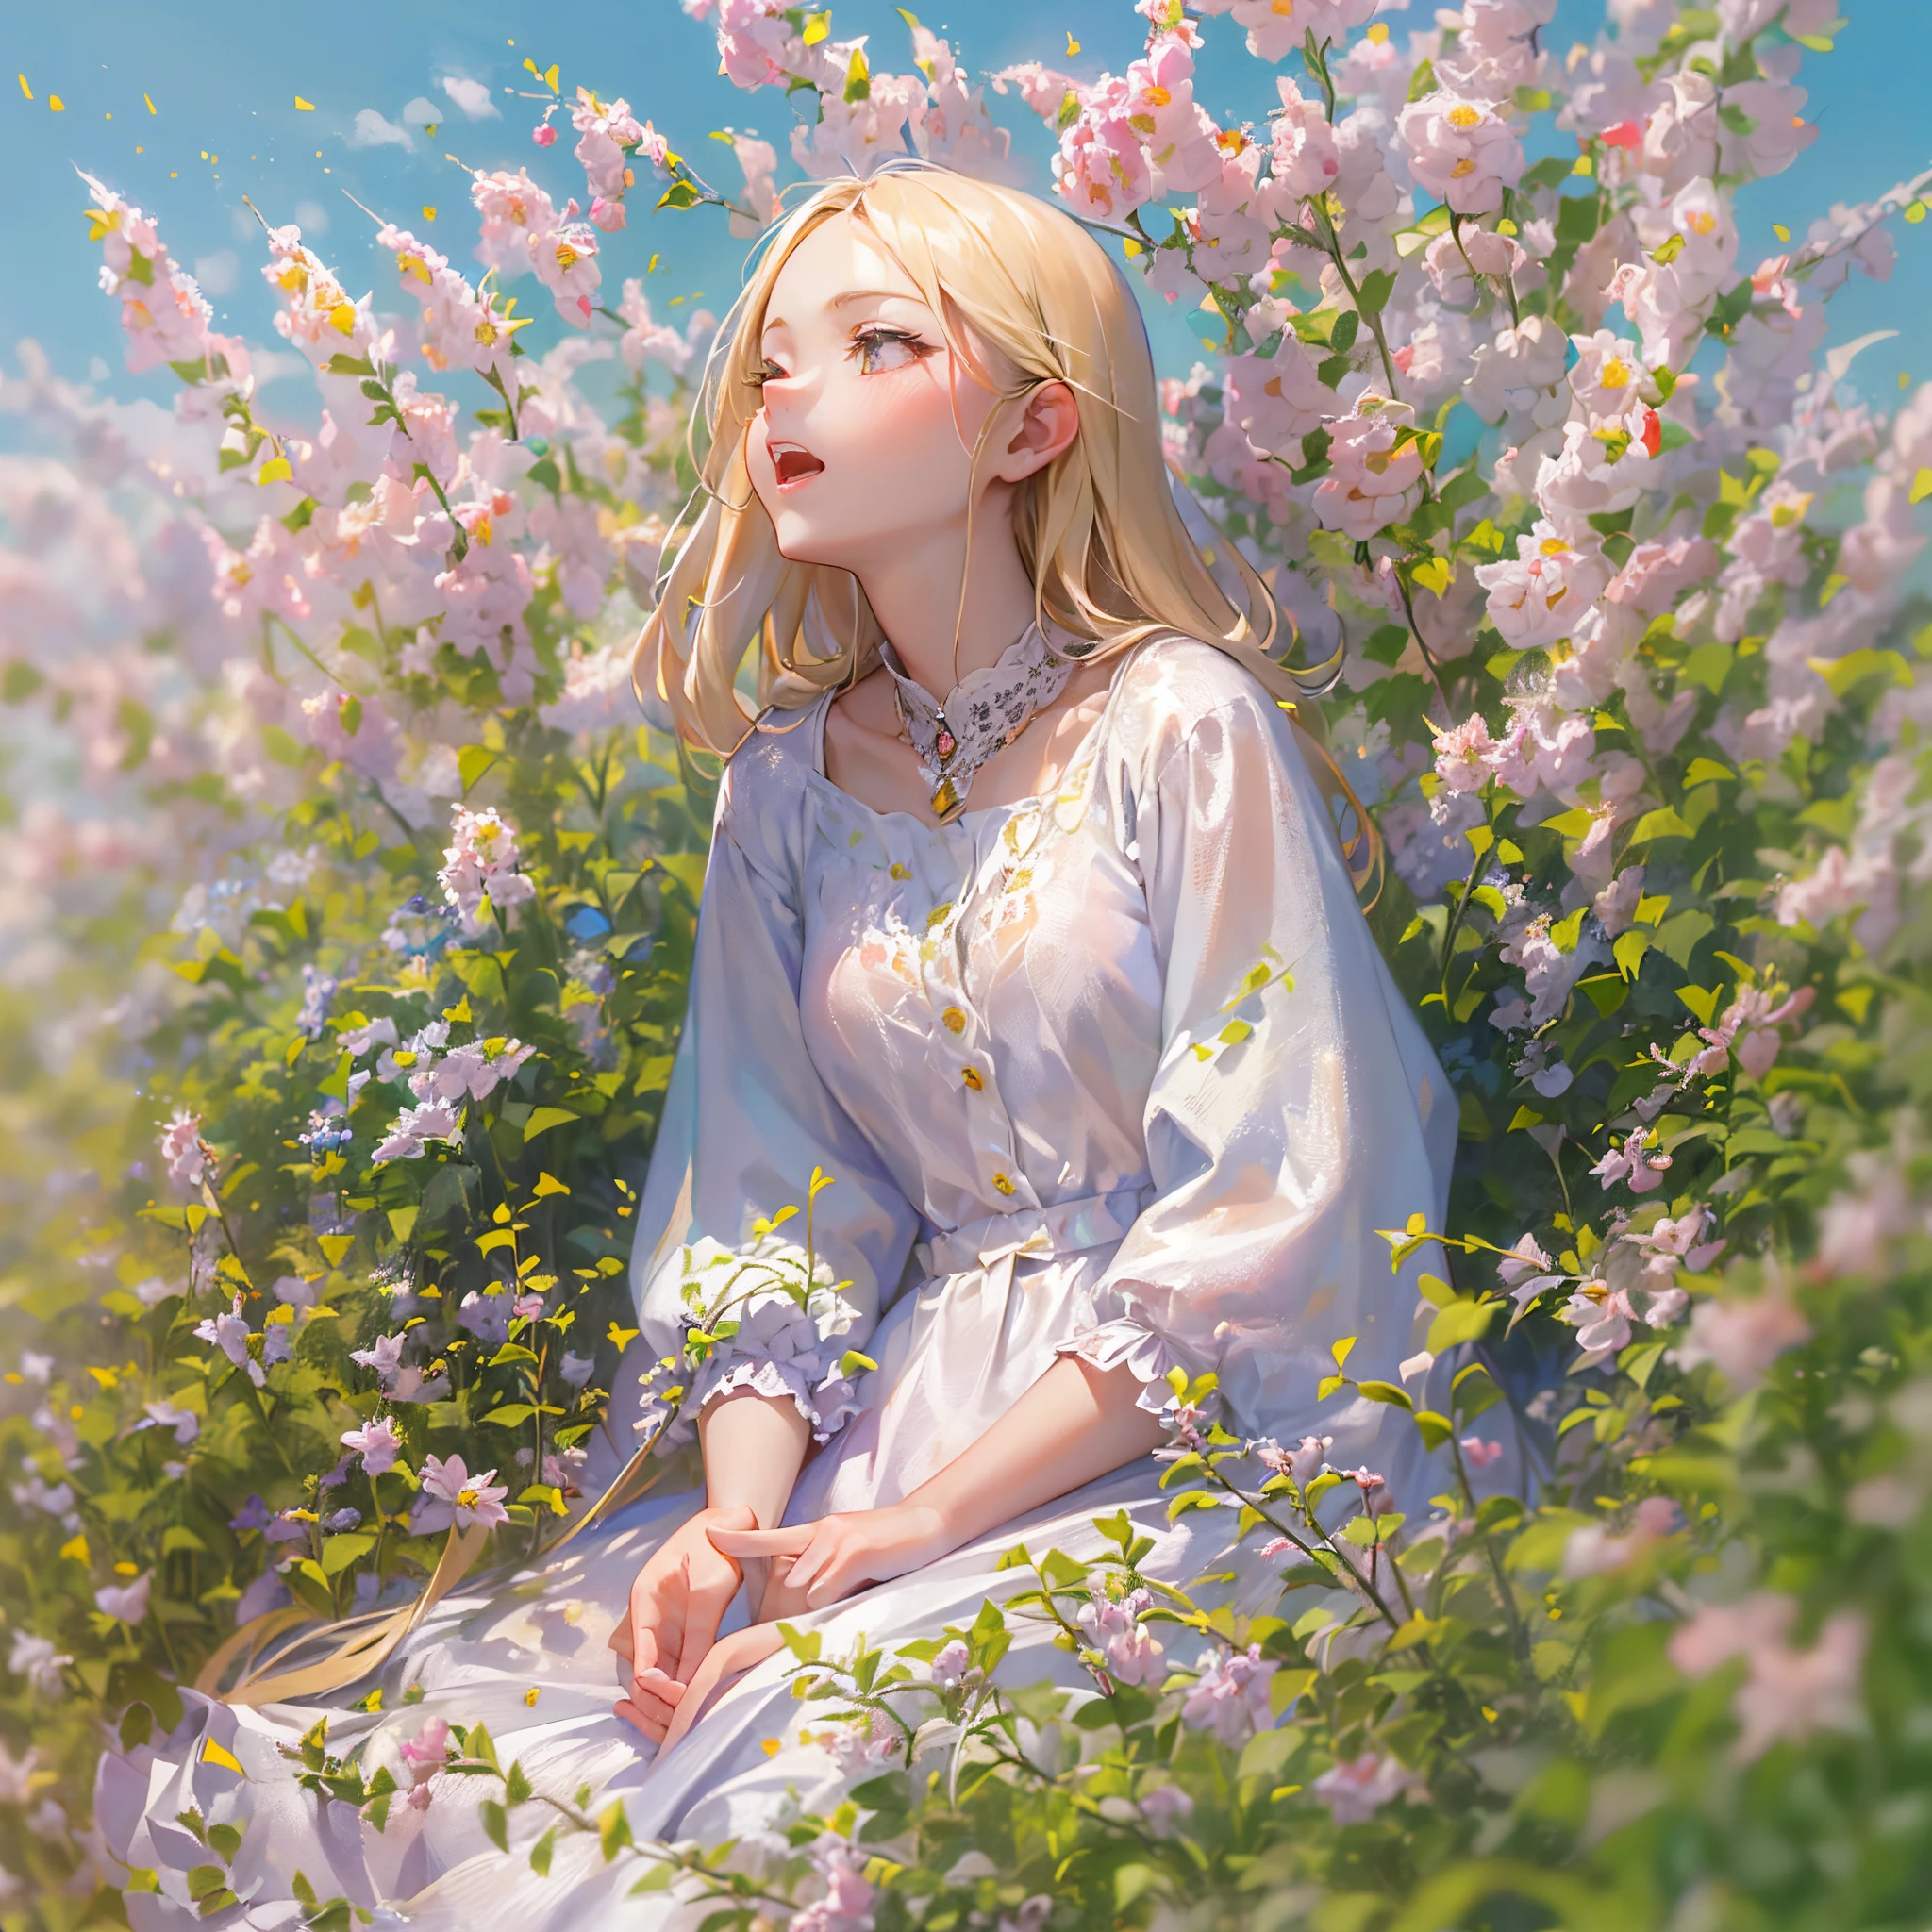 ((最好的品質, 8K, 傑作:1.3)), 1個女孩, 可爱的天使, 亞麻色頭髮, 樱桃唇美女, 坐在开花的苜蓿上, 与云雀一起歌唱, 清晨 , 在夏日晴朗的阳光下, (景深:1.3)